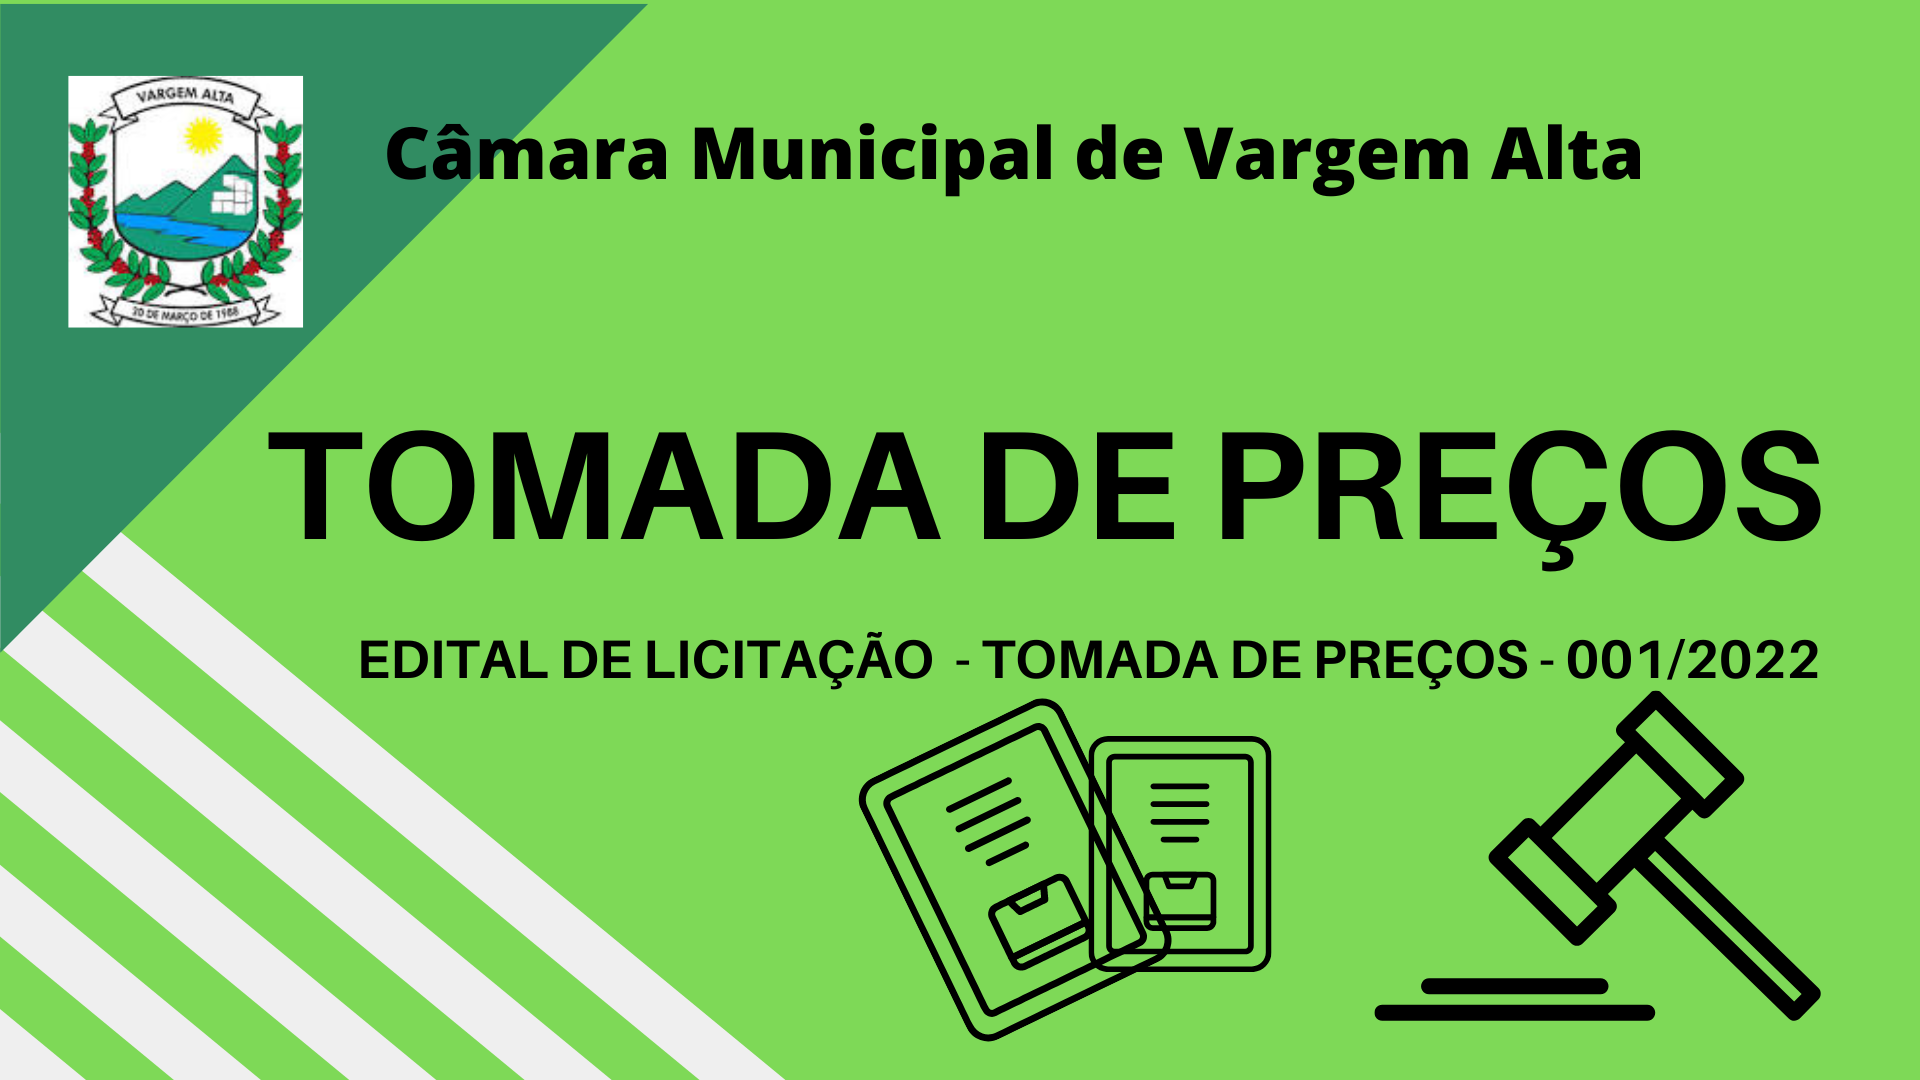  Edital de Licitação  - TOMADA DE PREÇOS - Nº 001/2022